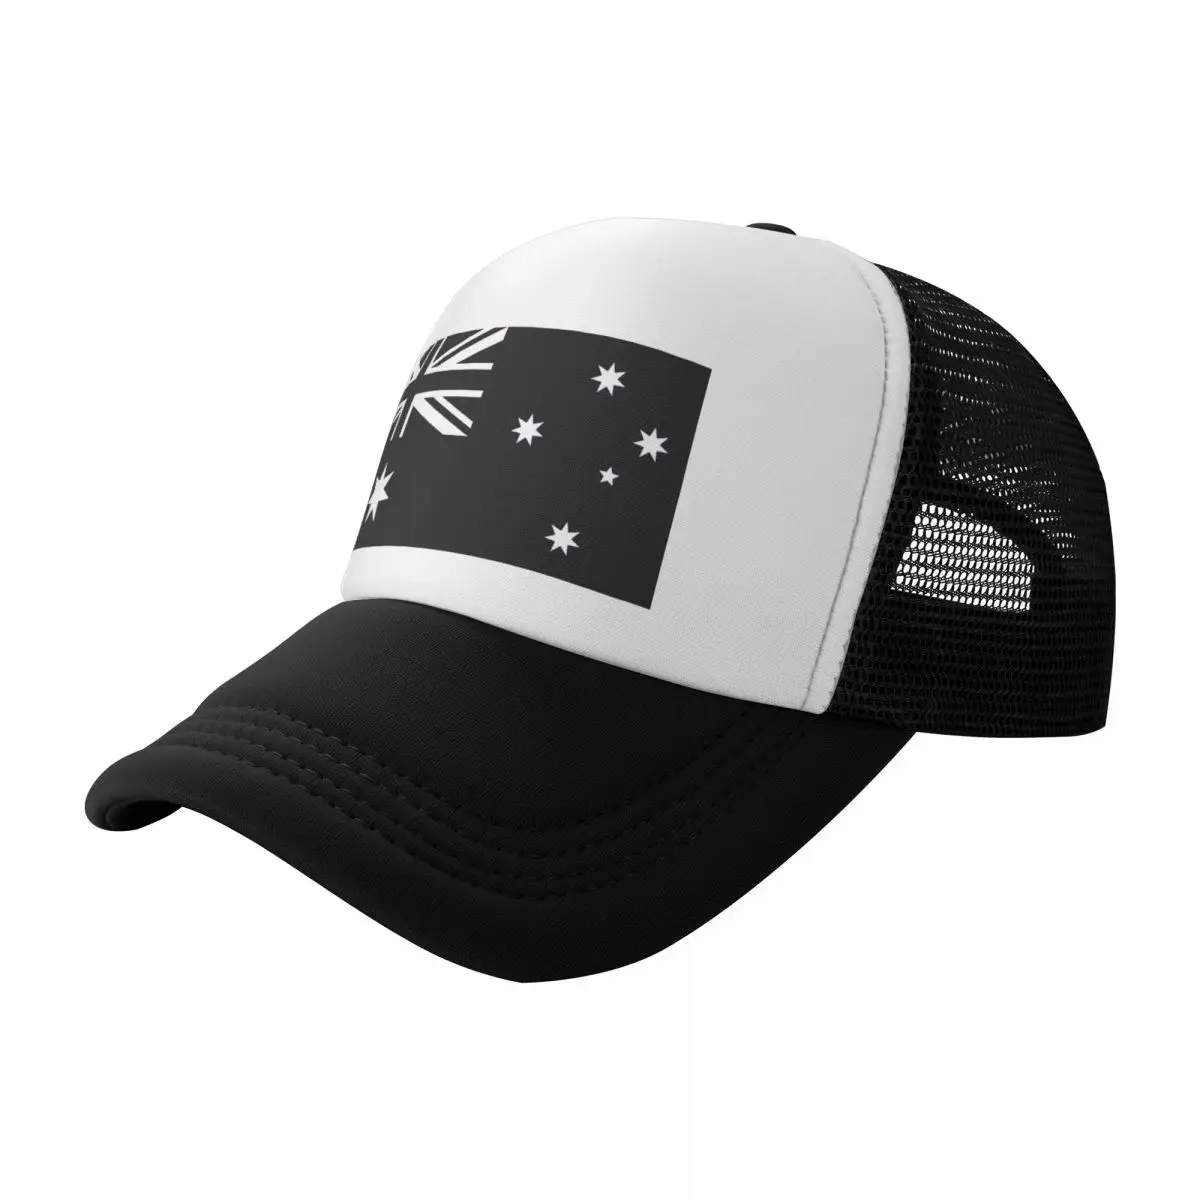 

Australian Flag - Black and White Baseball Cap Hat Beach Hat Man For The Sun Big Size Hat Baseball For Men Women's